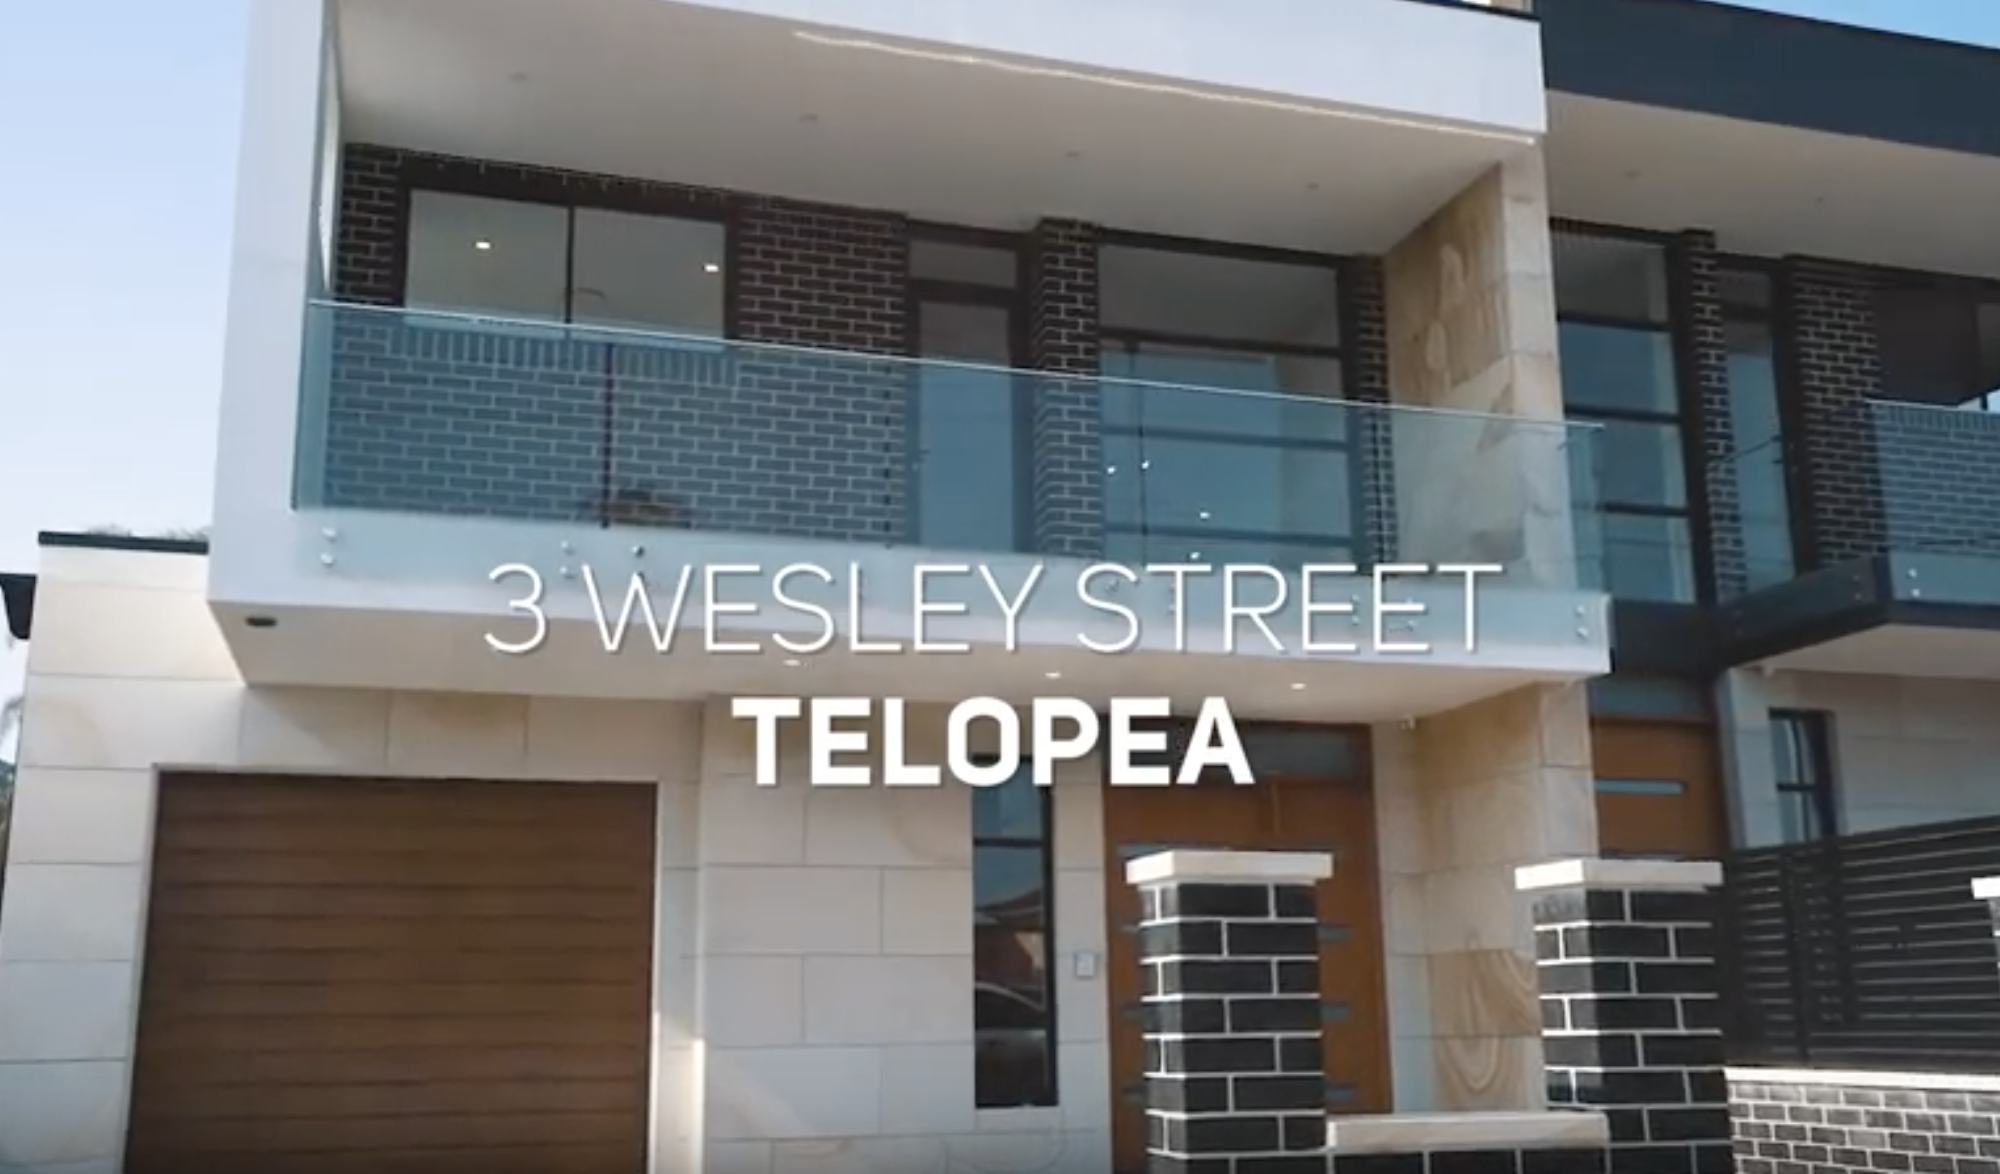 3 Wesley street telopea video of brick home